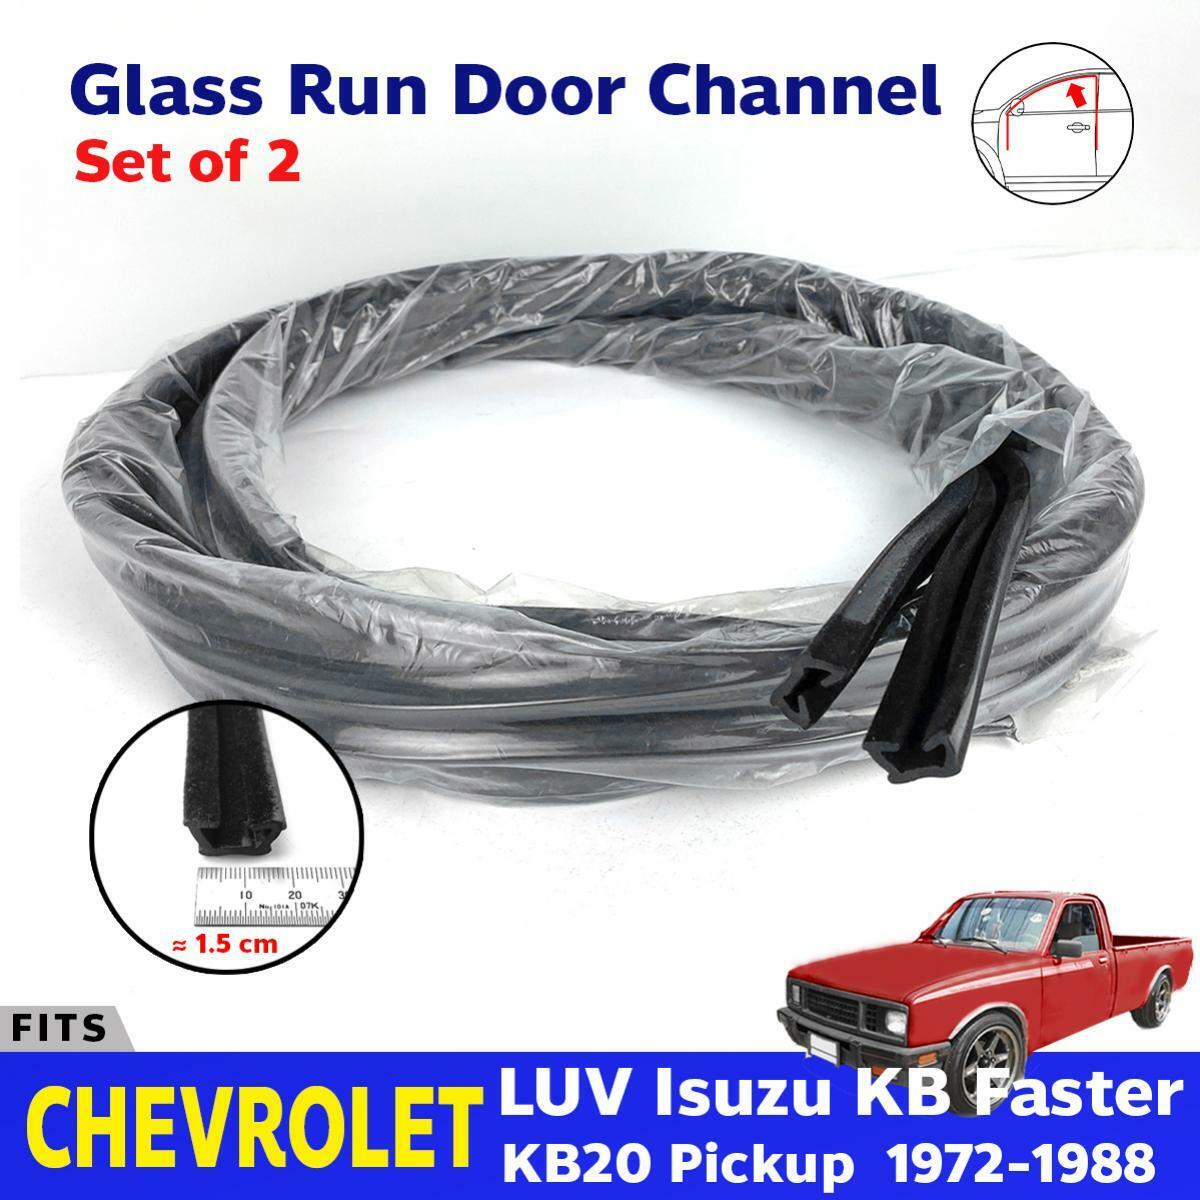 Fits Chevrolet LUV Isuzu KB Faster KB20 Pickup Door Glass Run Channel Felt 2 PC